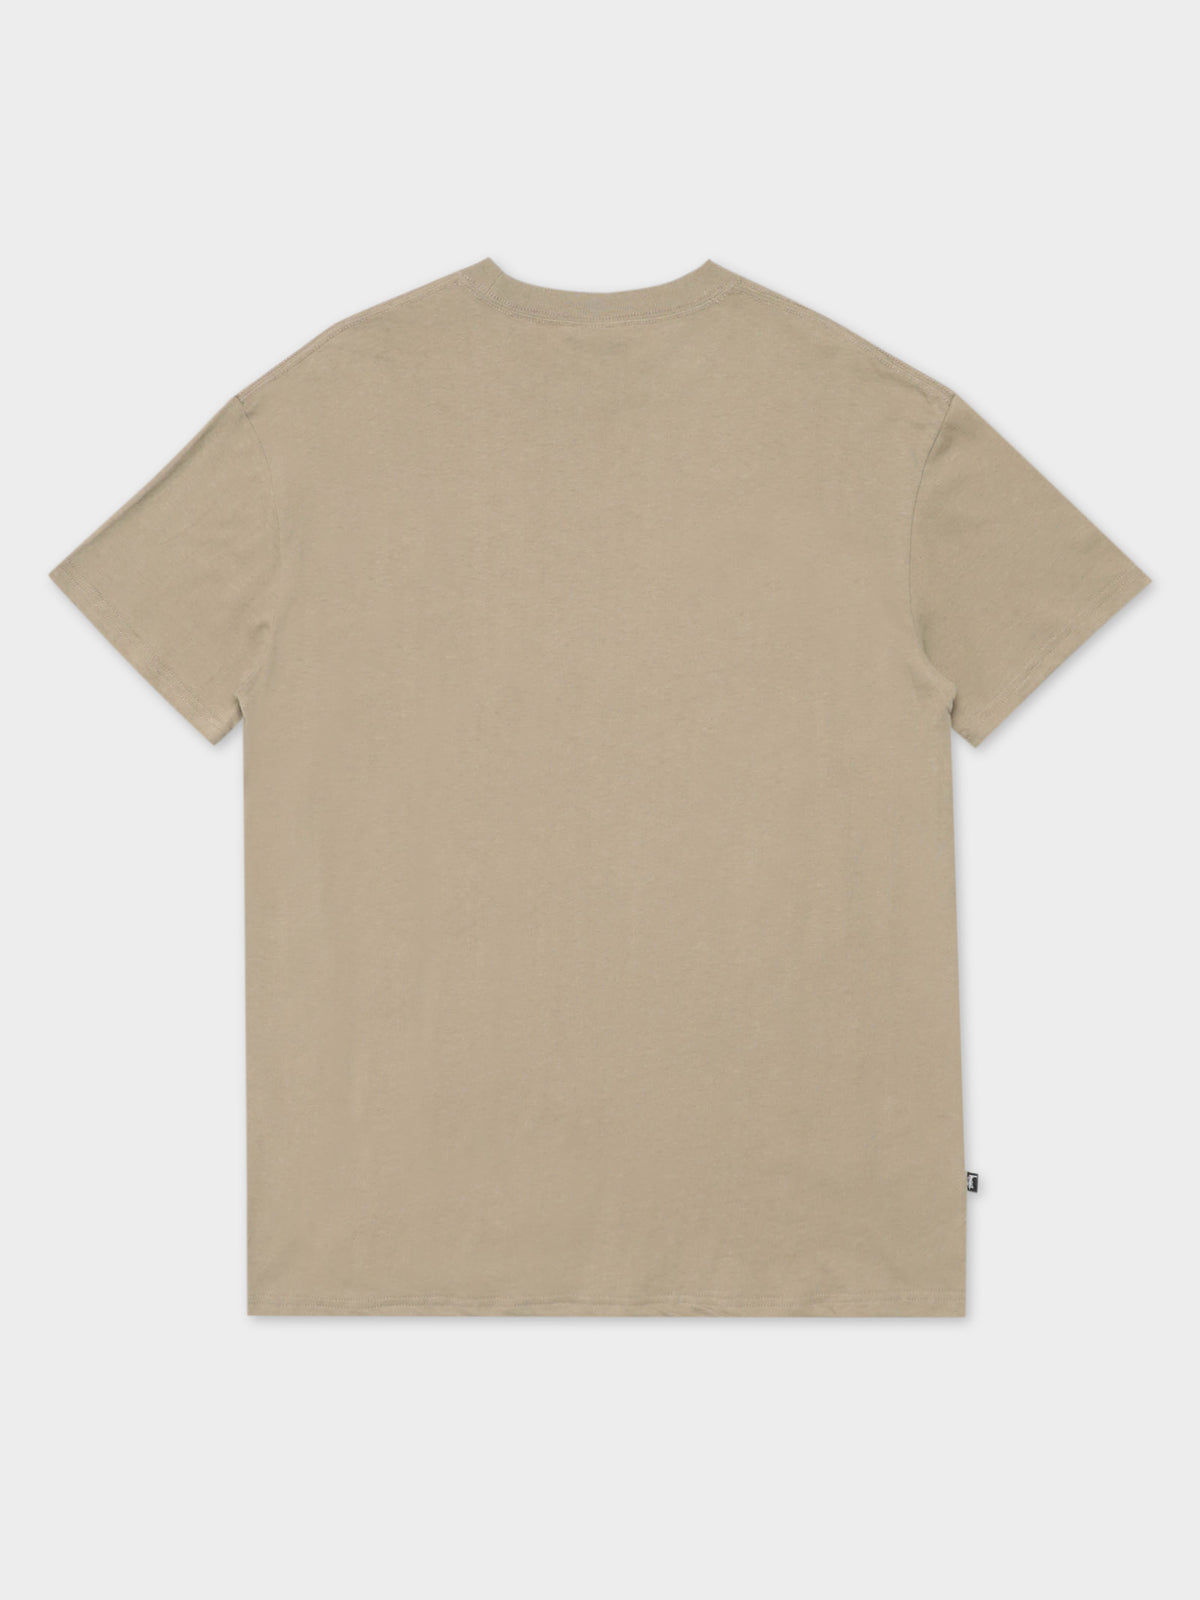 TM Short Sleeve T-Shirt in Atmosphere